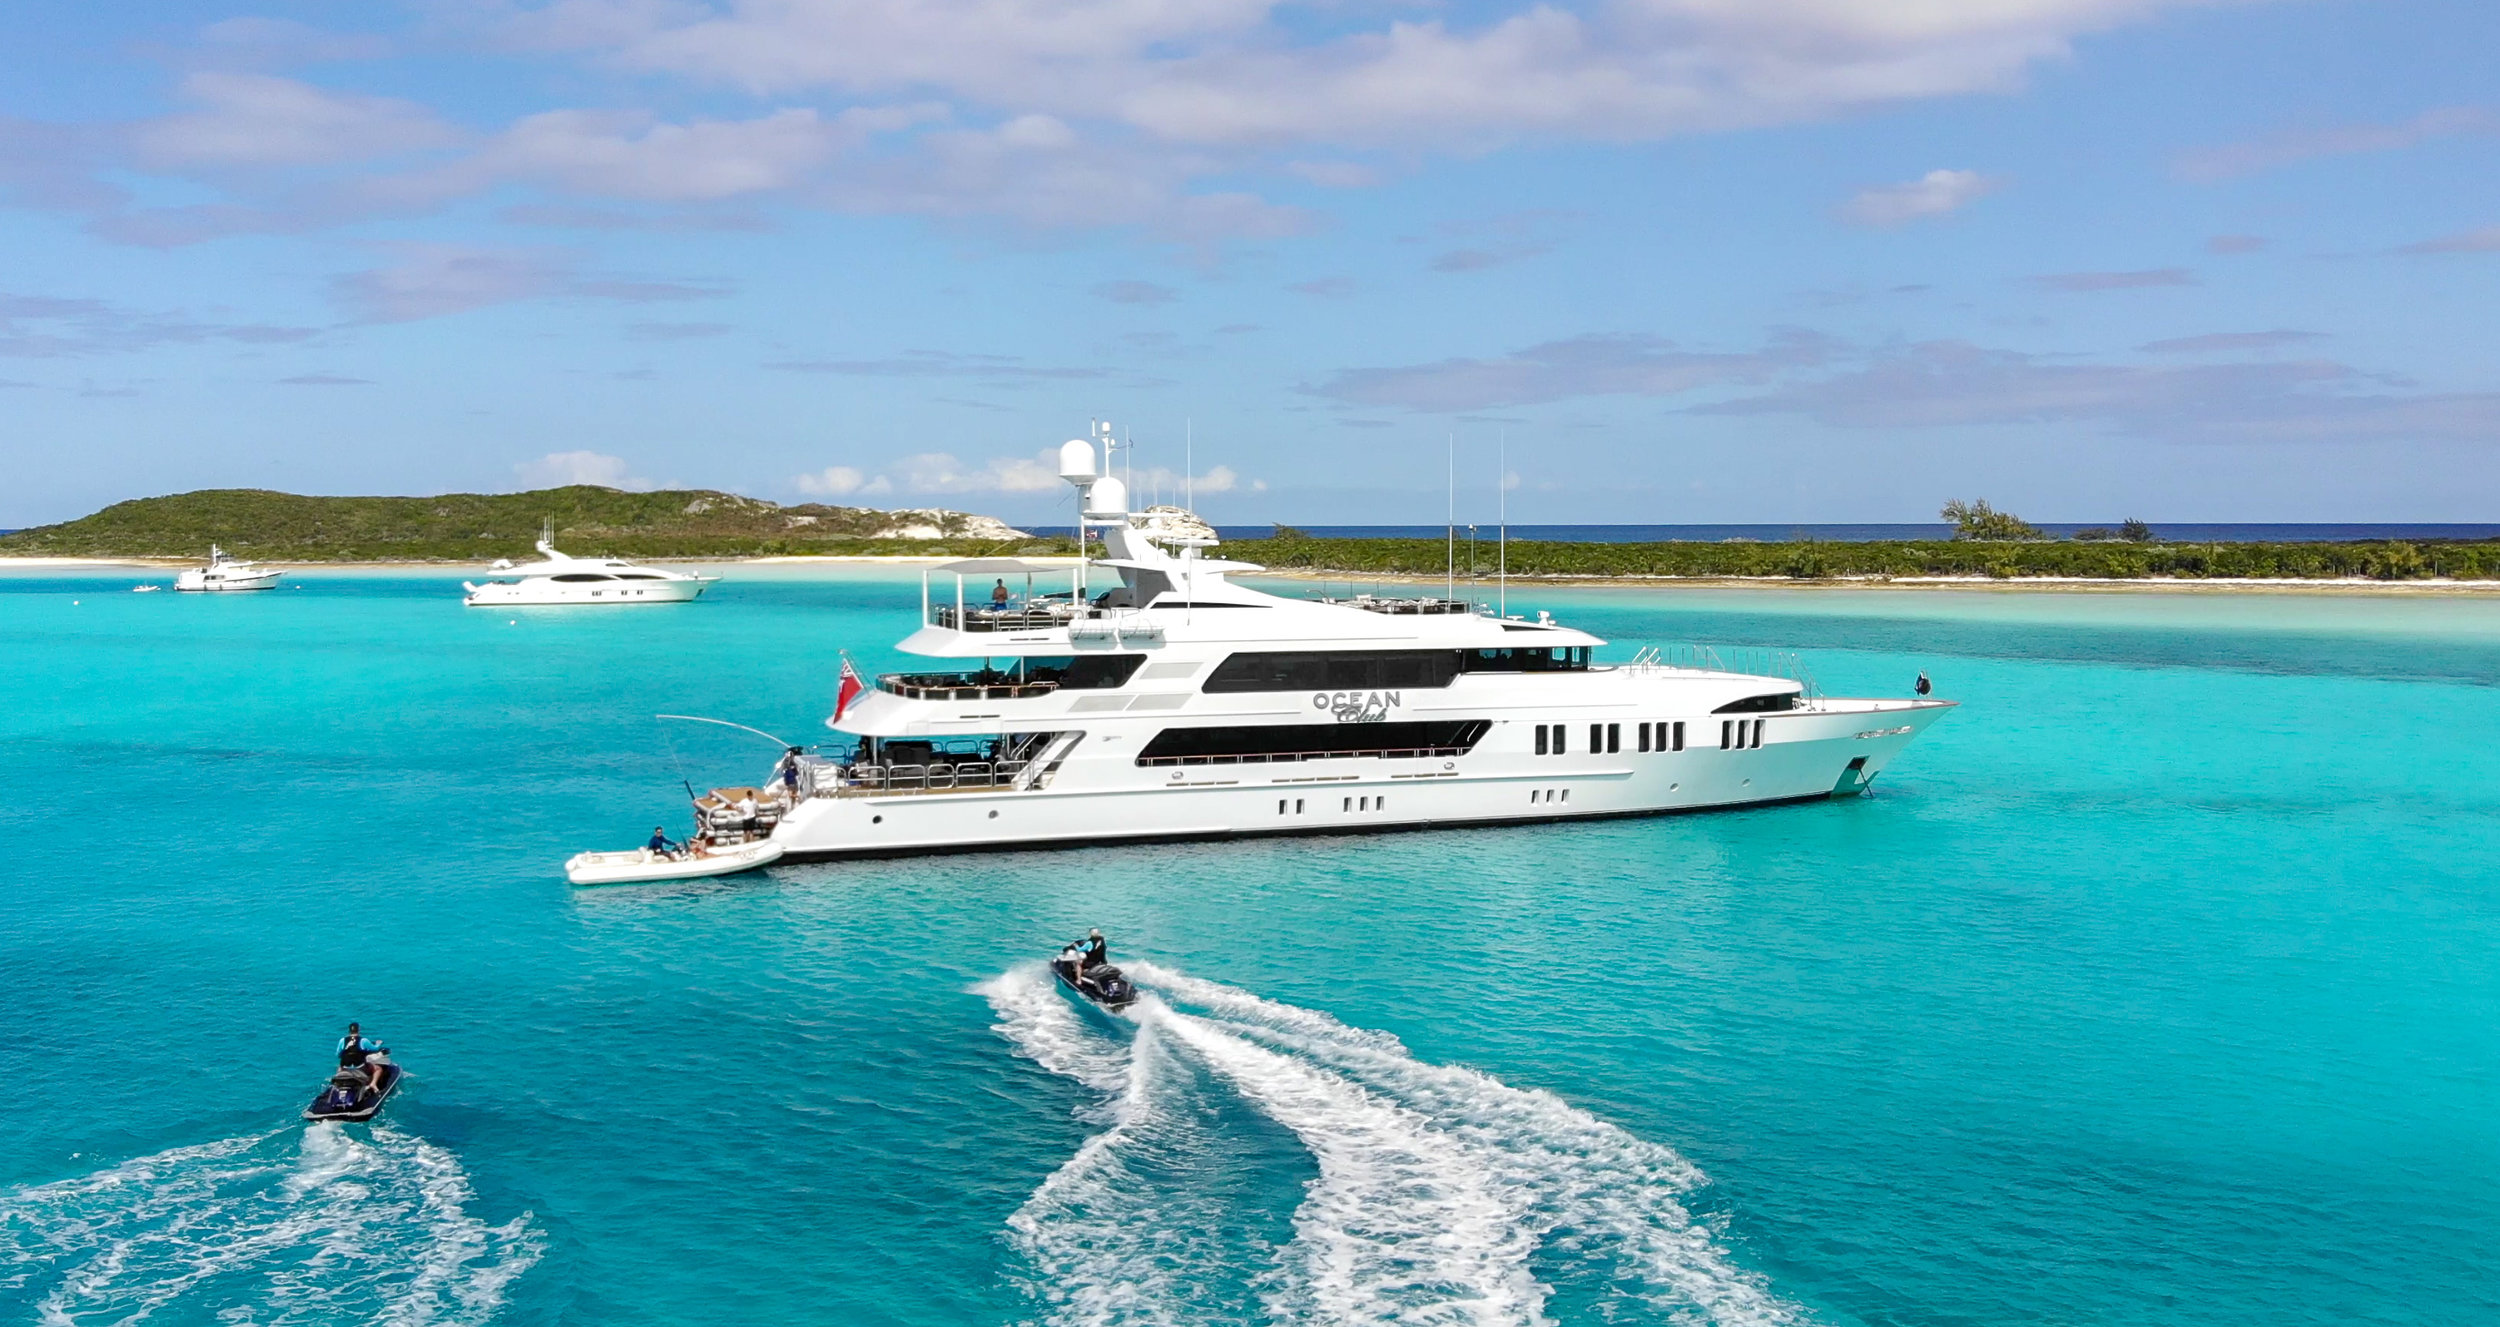 Yacht Ocean Club in The Bahamas, Caribbean